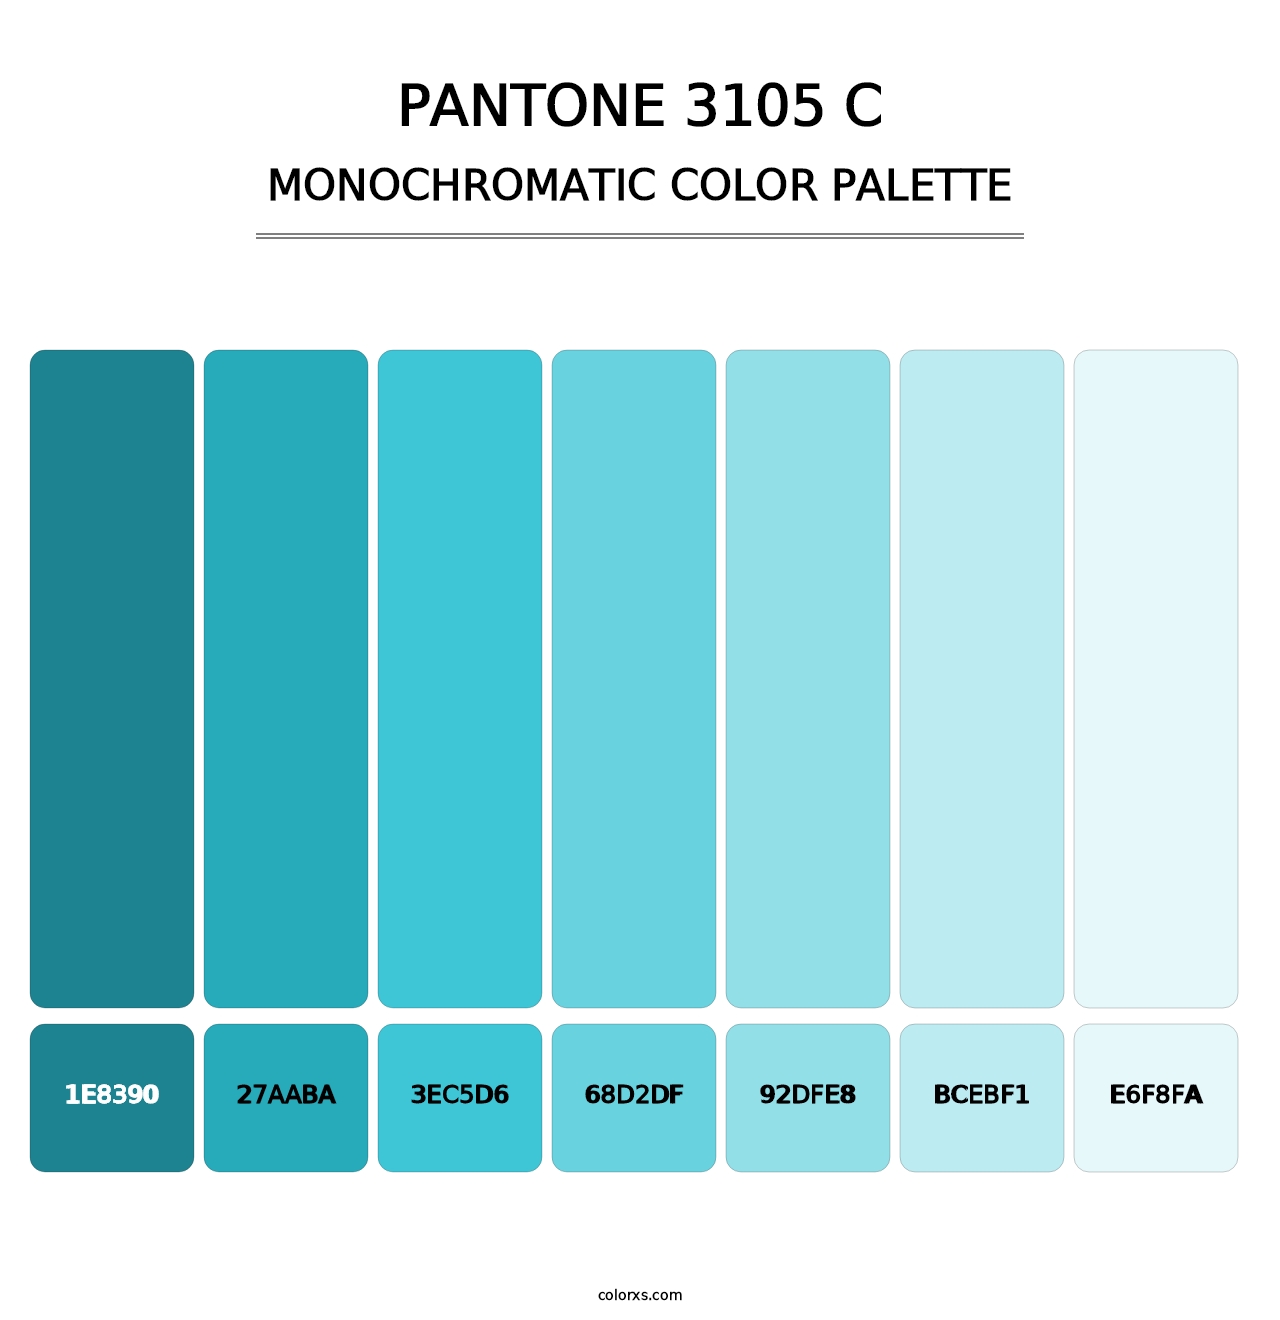 PANTONE 3105 C - Monochromatic Color Palette